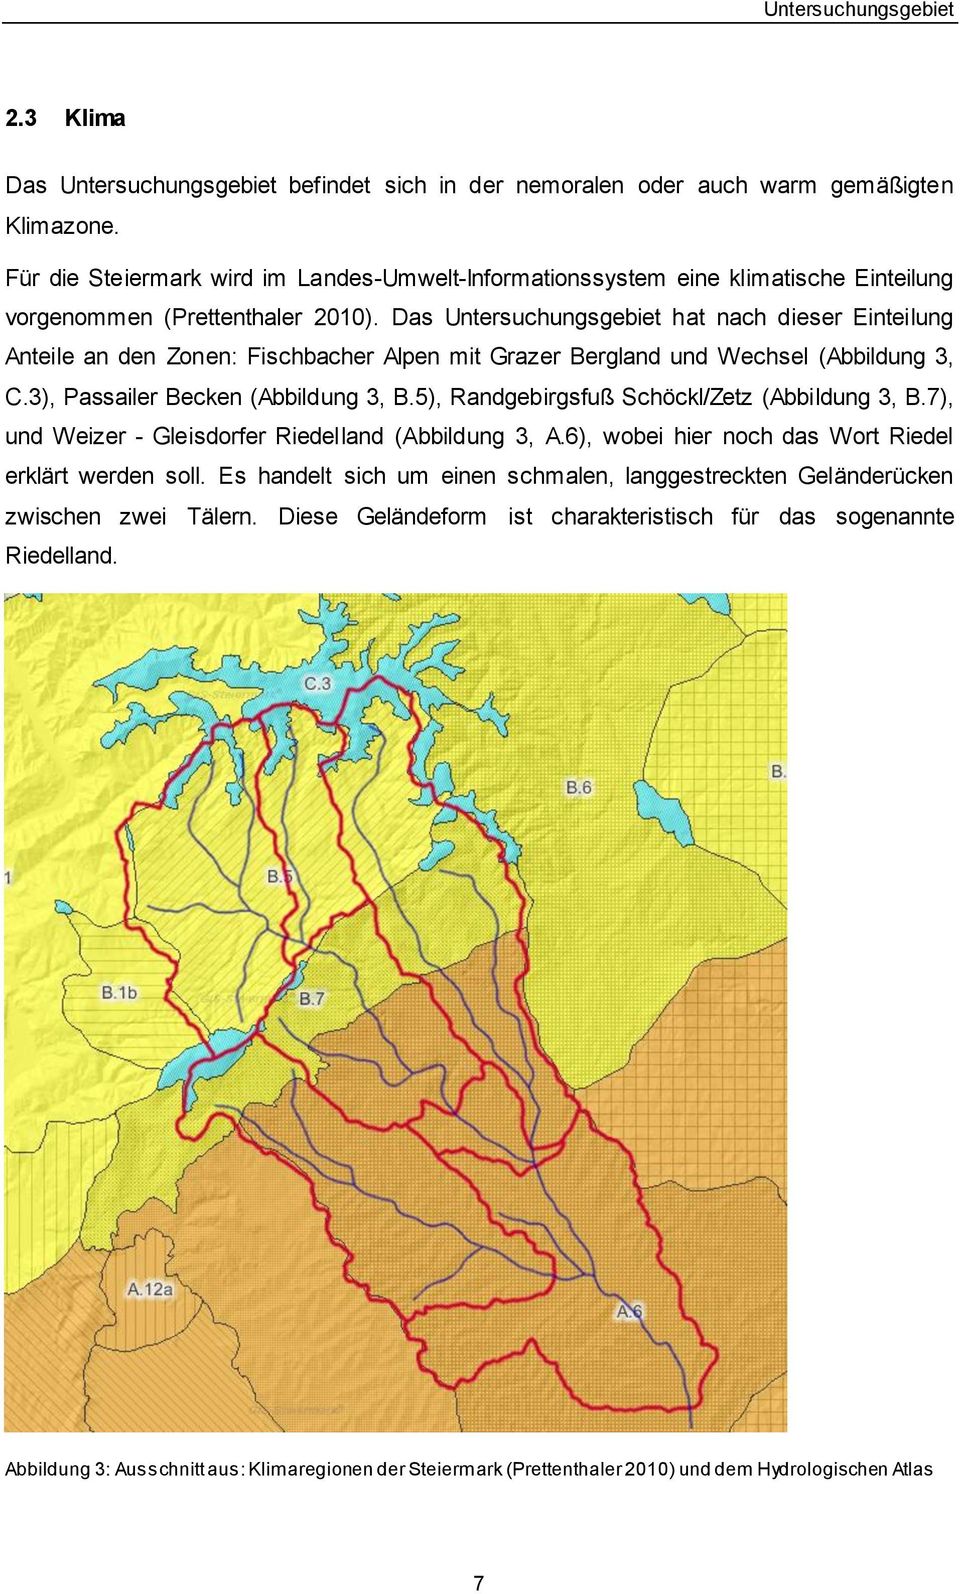 Das Untersuchungsgebiet hat nach dieser Einteilung Anteile an den Zonen: Fischbacher Alpen mit Grazer Bergland und Wechsel (Abbildung 3, C.3), Passailer Becken (Abbildung 3, B.